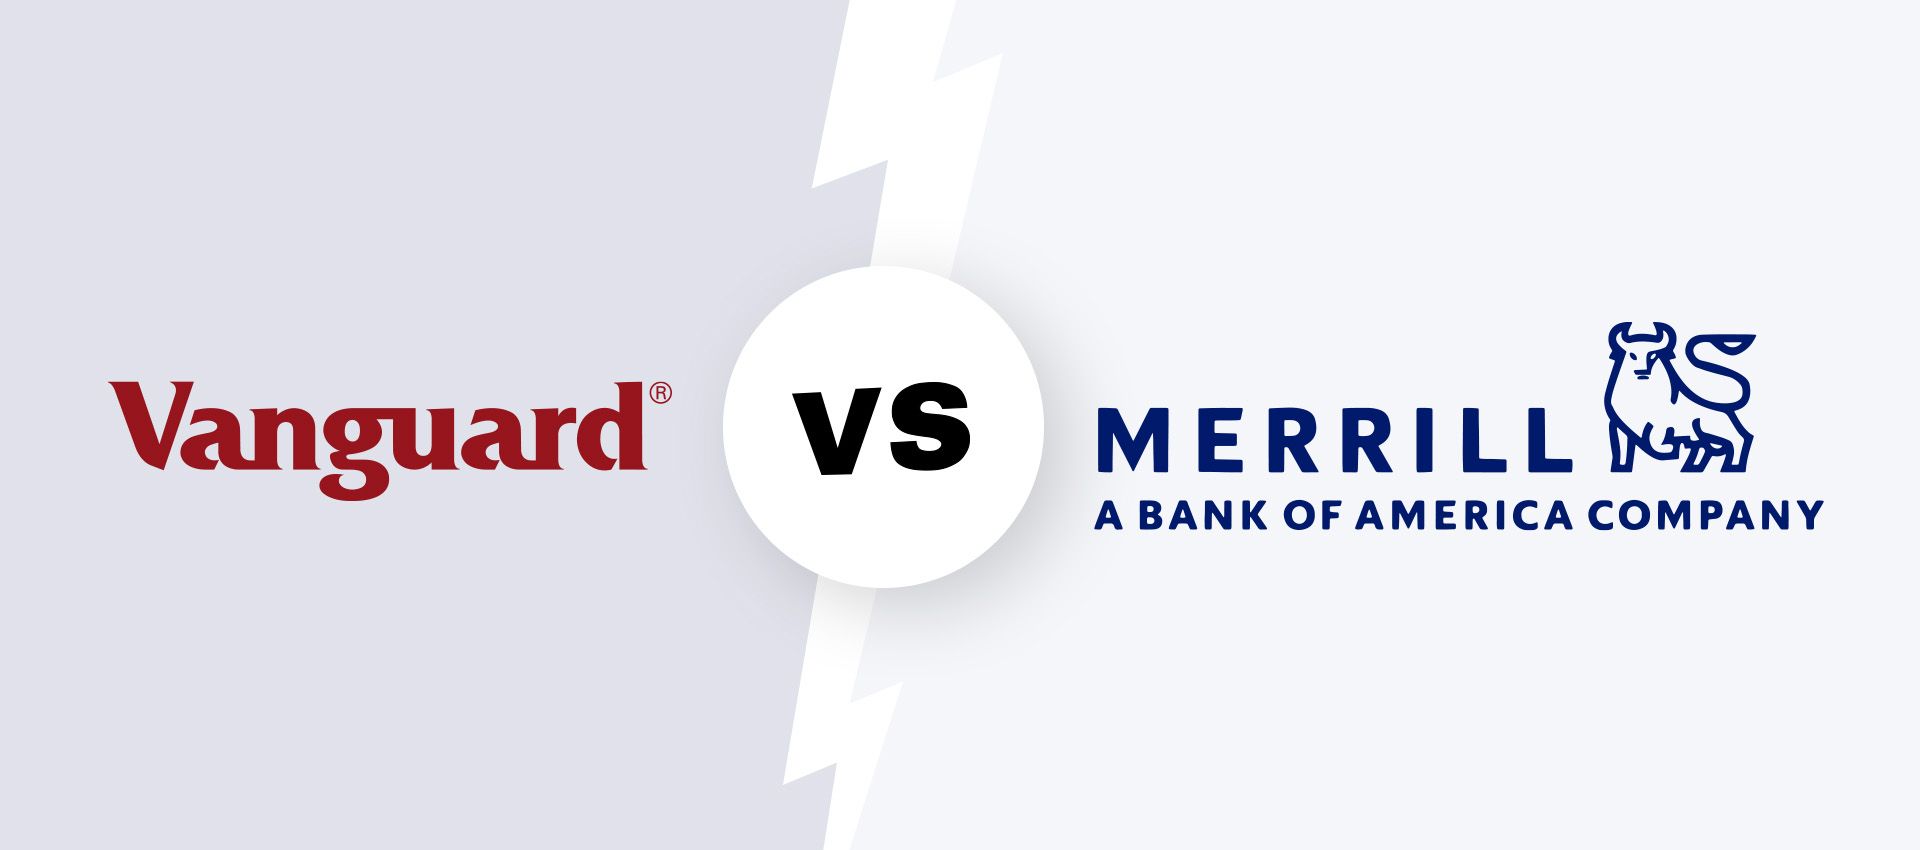 Vanguard vs. Merrill logos